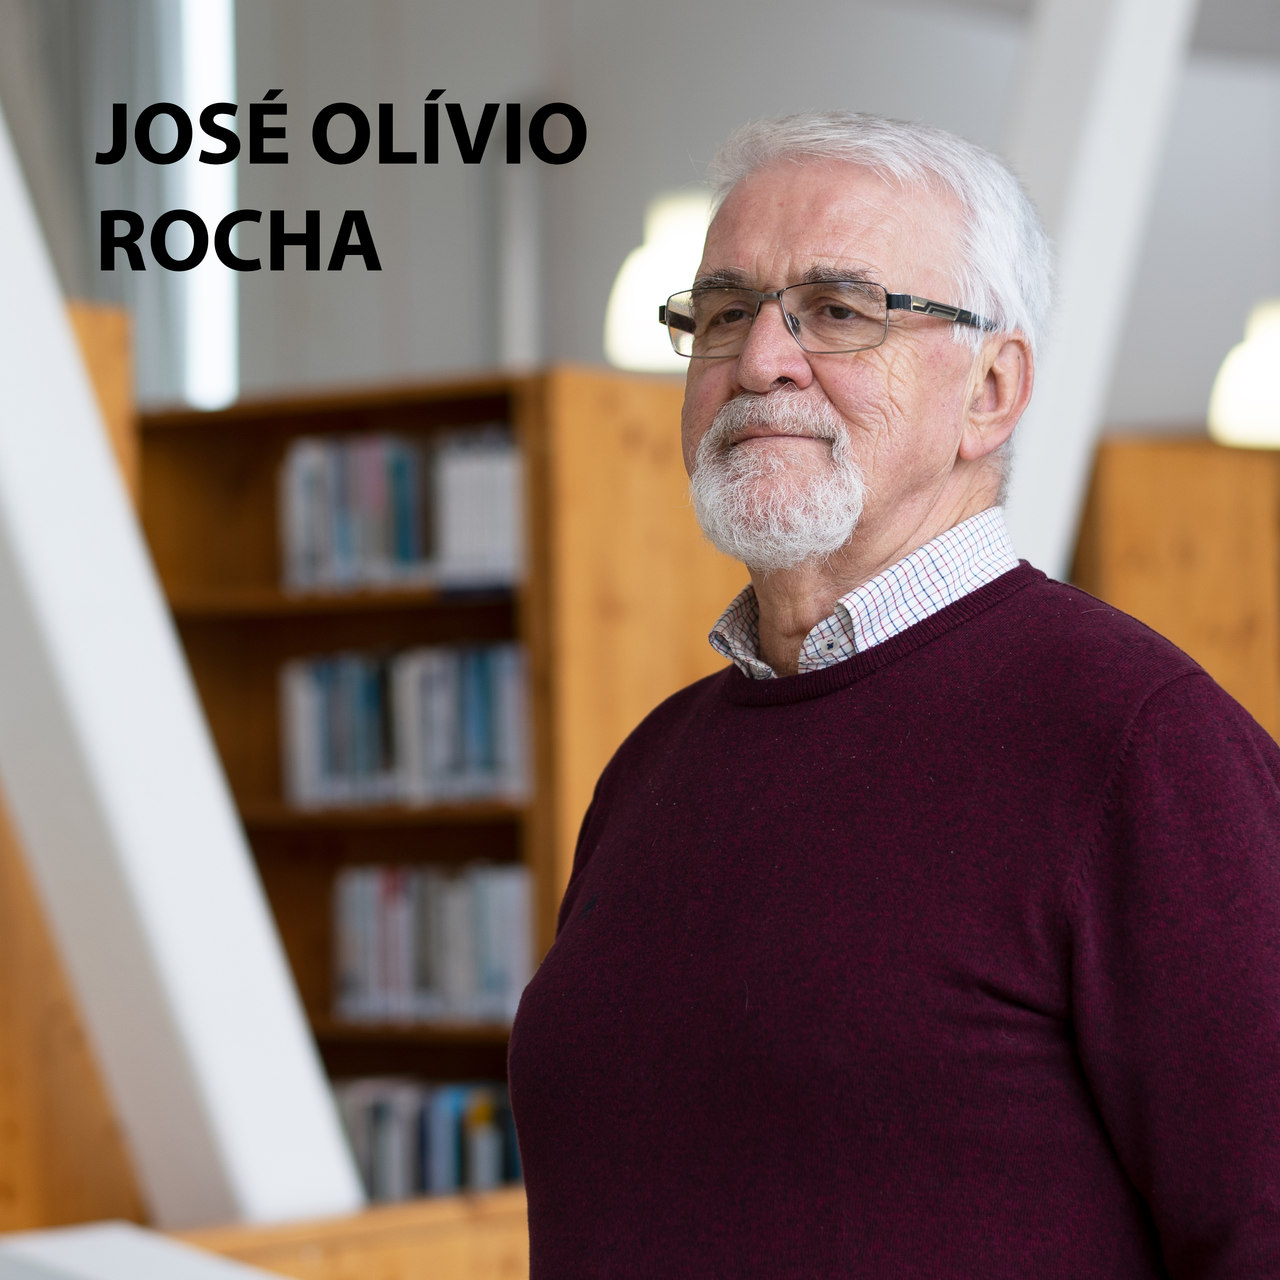 Livro de Cabeceira EP.20 – José Olívio Rocha apresenta a obra “Memórias de Adriano”, de Marguerite Yourcenar.